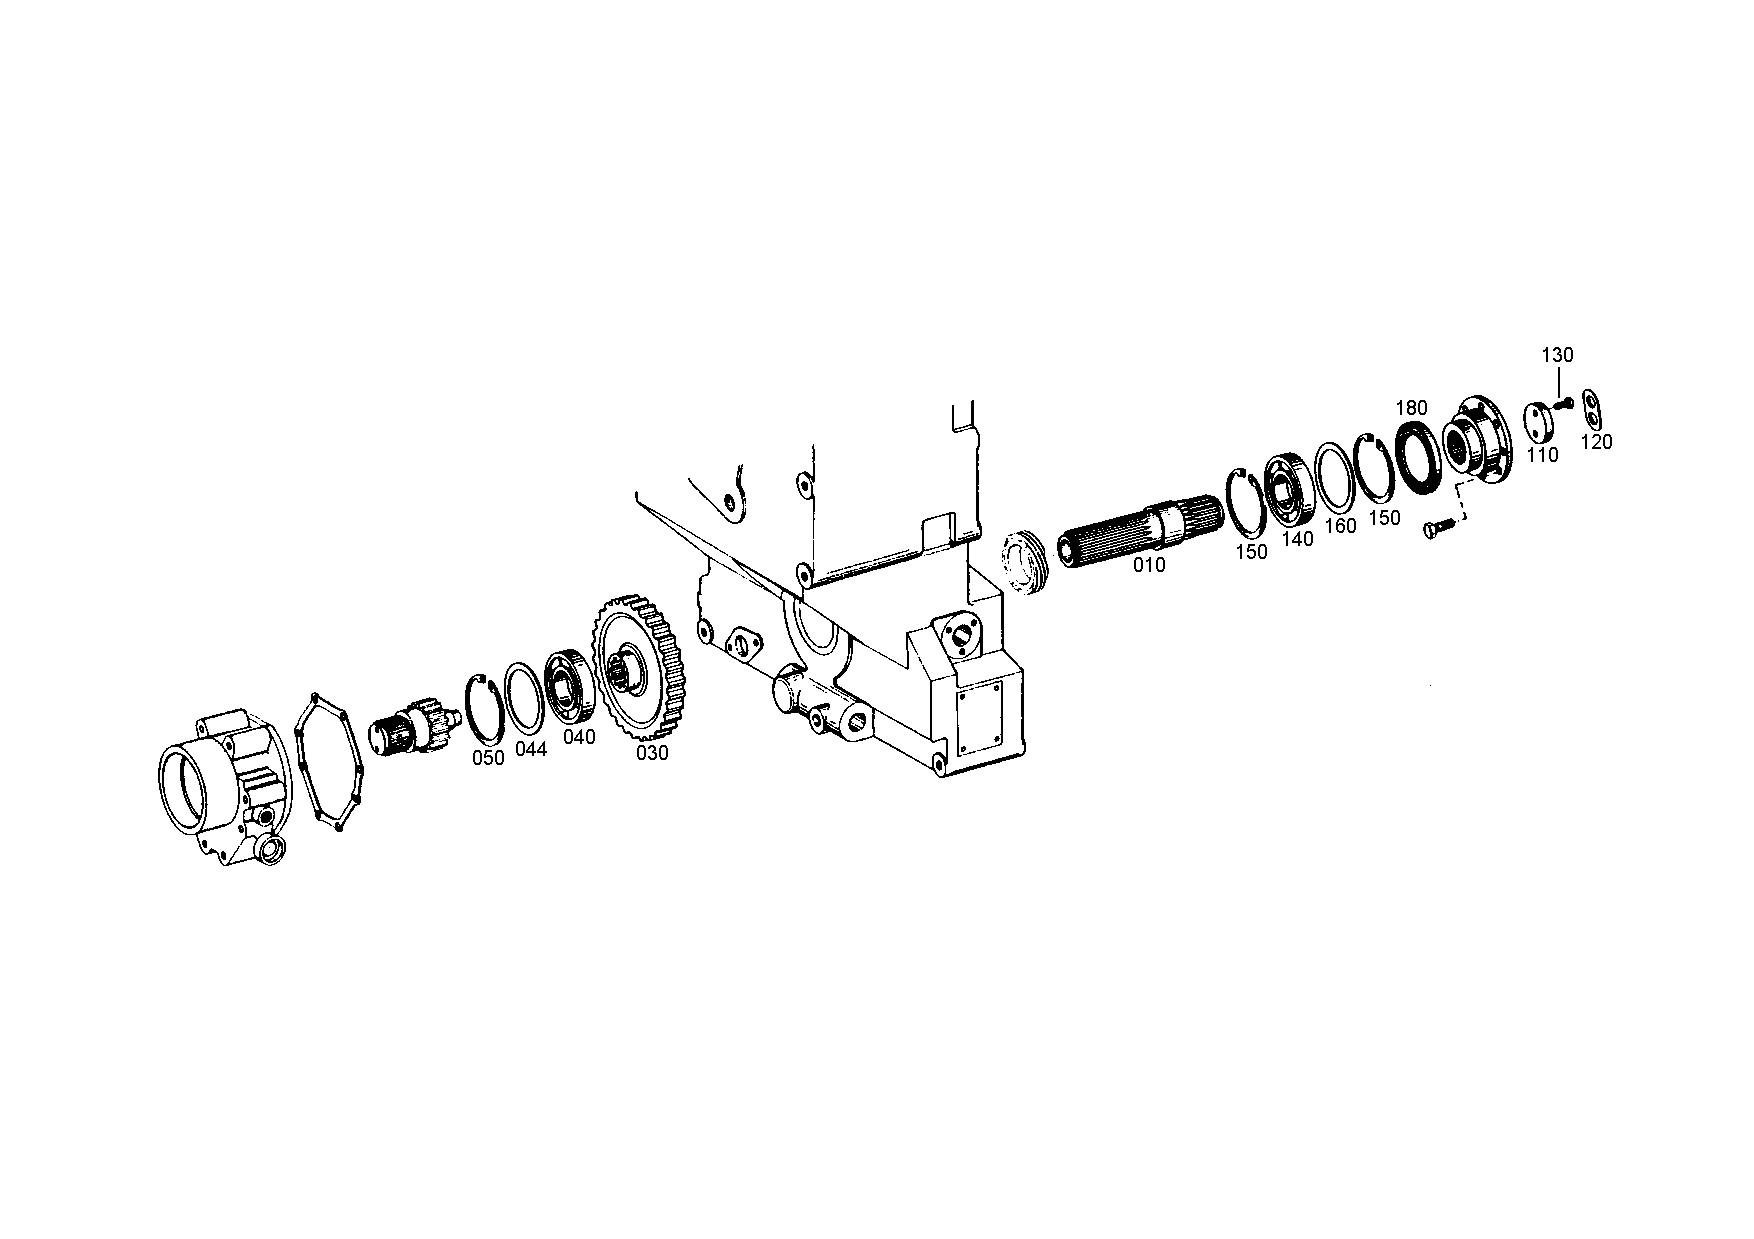 drawing for SCHOPF MASCHINENBAU GMBH 14218 - WASHER (figure 4)